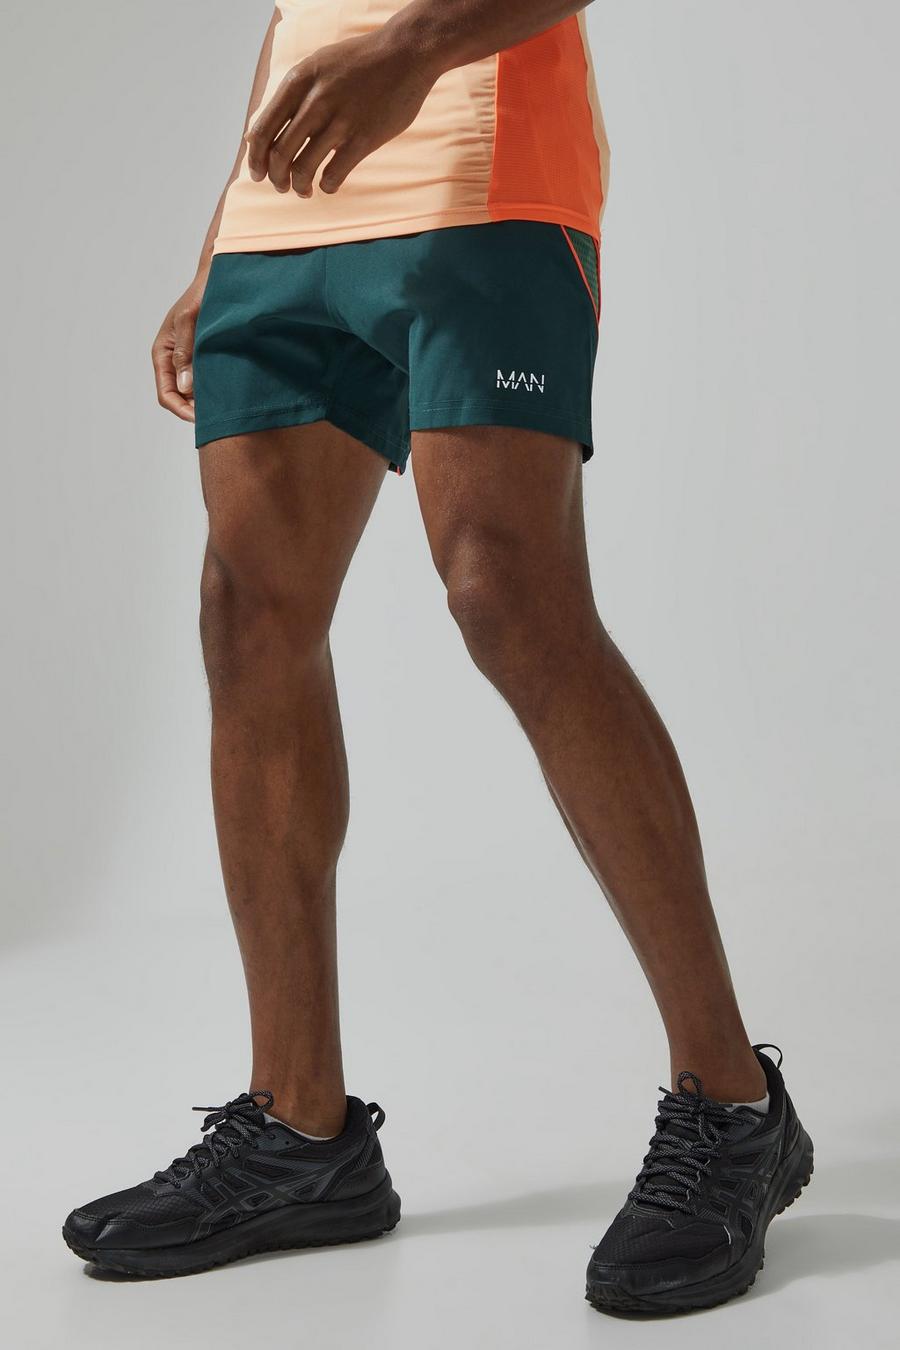 Pantalón corto MAN Active de malla texturizada con colores en bloque, Teal